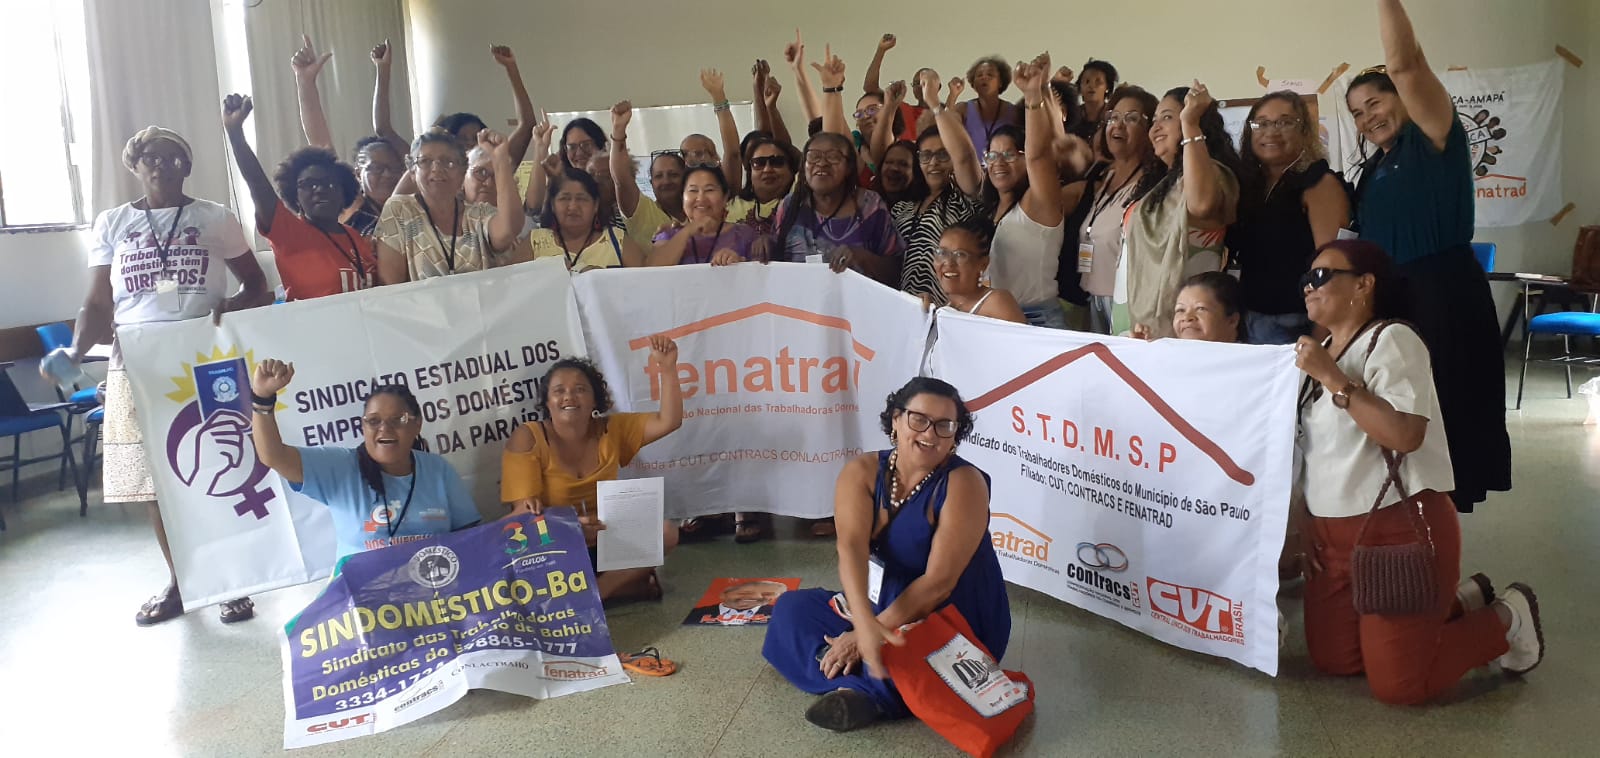 FENATRAD – Federação Nacional das Trabalhadoras Domésticas e CNTD – Conselho Nacional dos Trabalhadores Domésticos do Brasil realizam assembleia e jornada de reuniões em Brasília